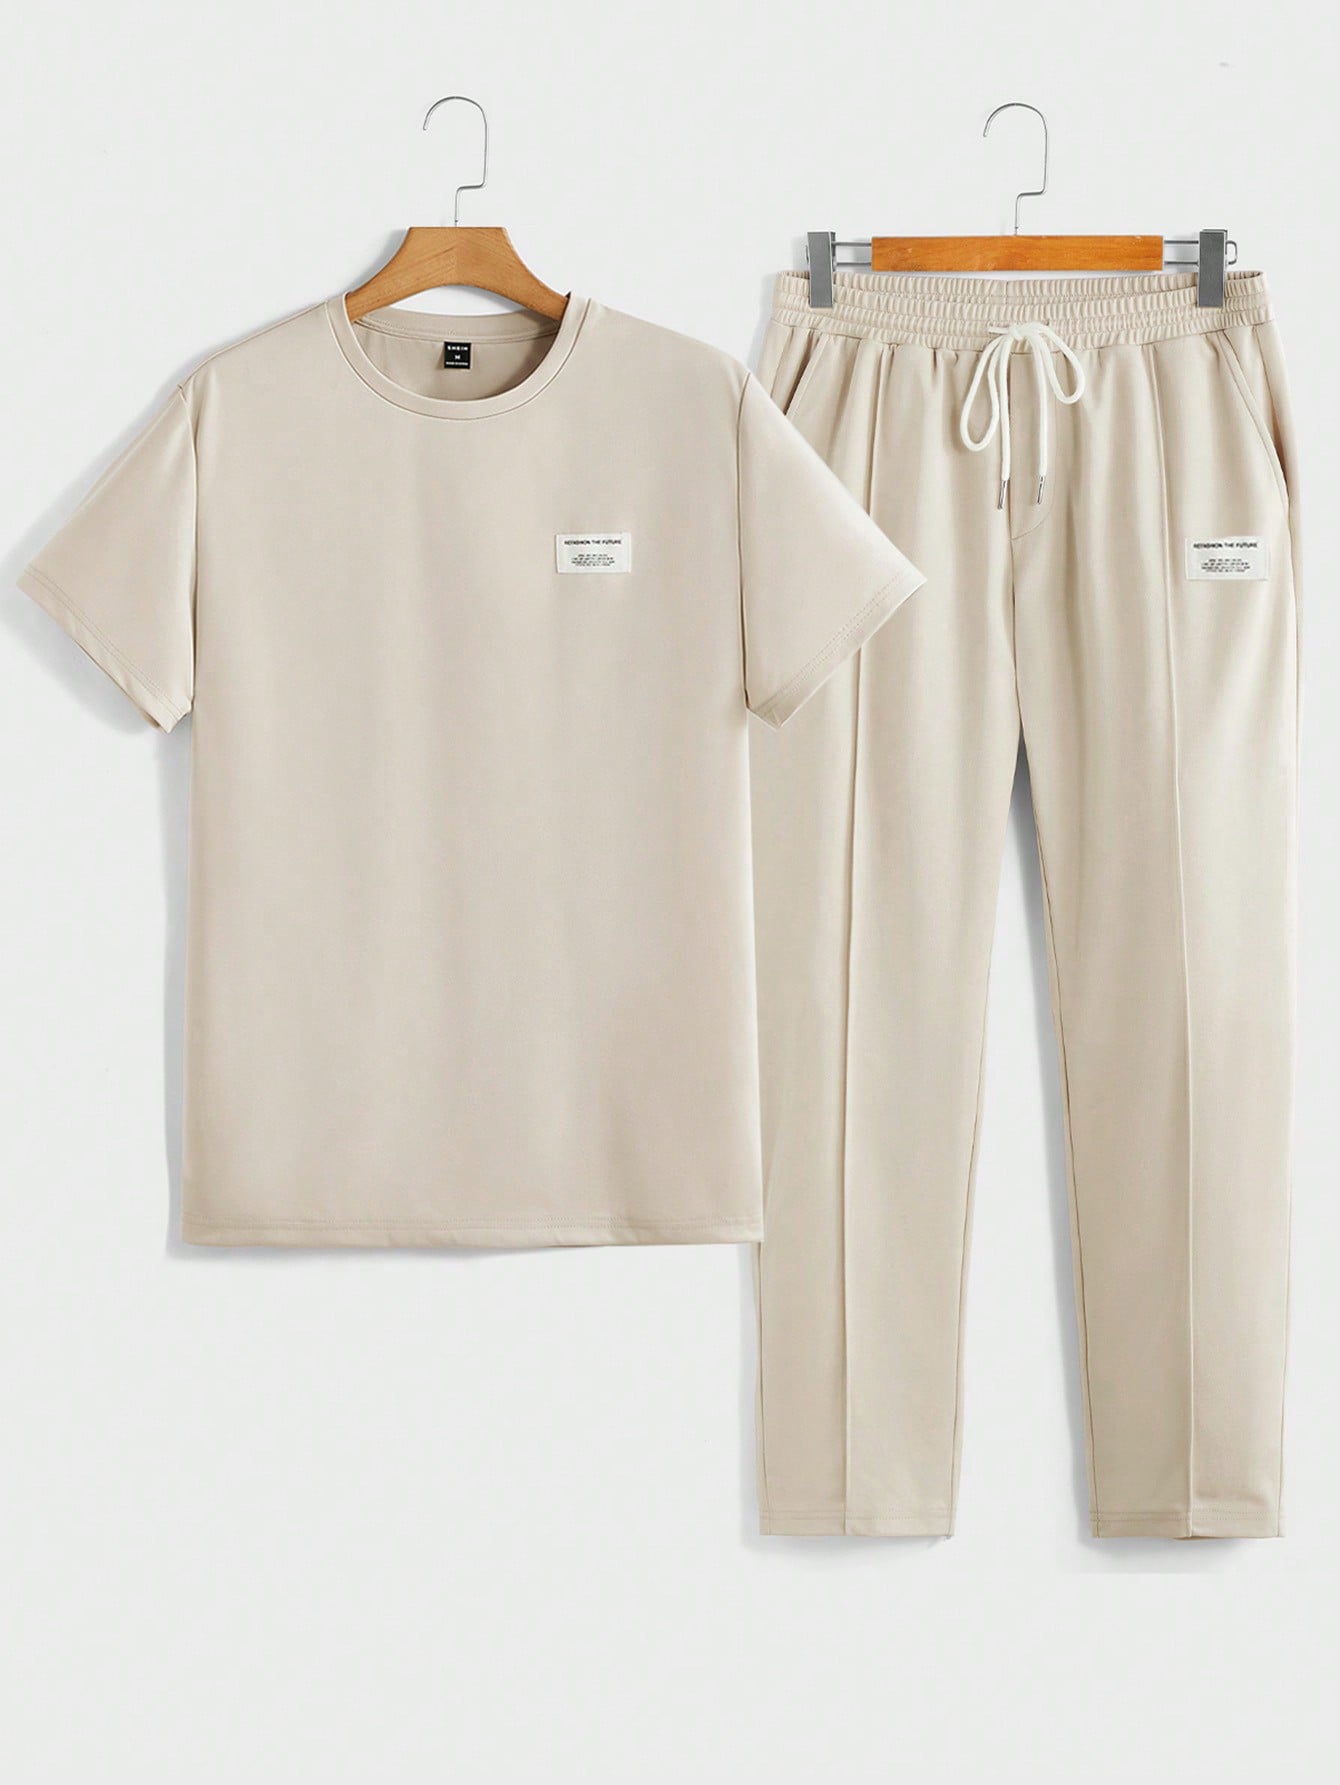 Мужская футболка с короткими рукавами и трикотажными повседневными брюками Manfinity Homme с надписью и нашивкой, абрикос